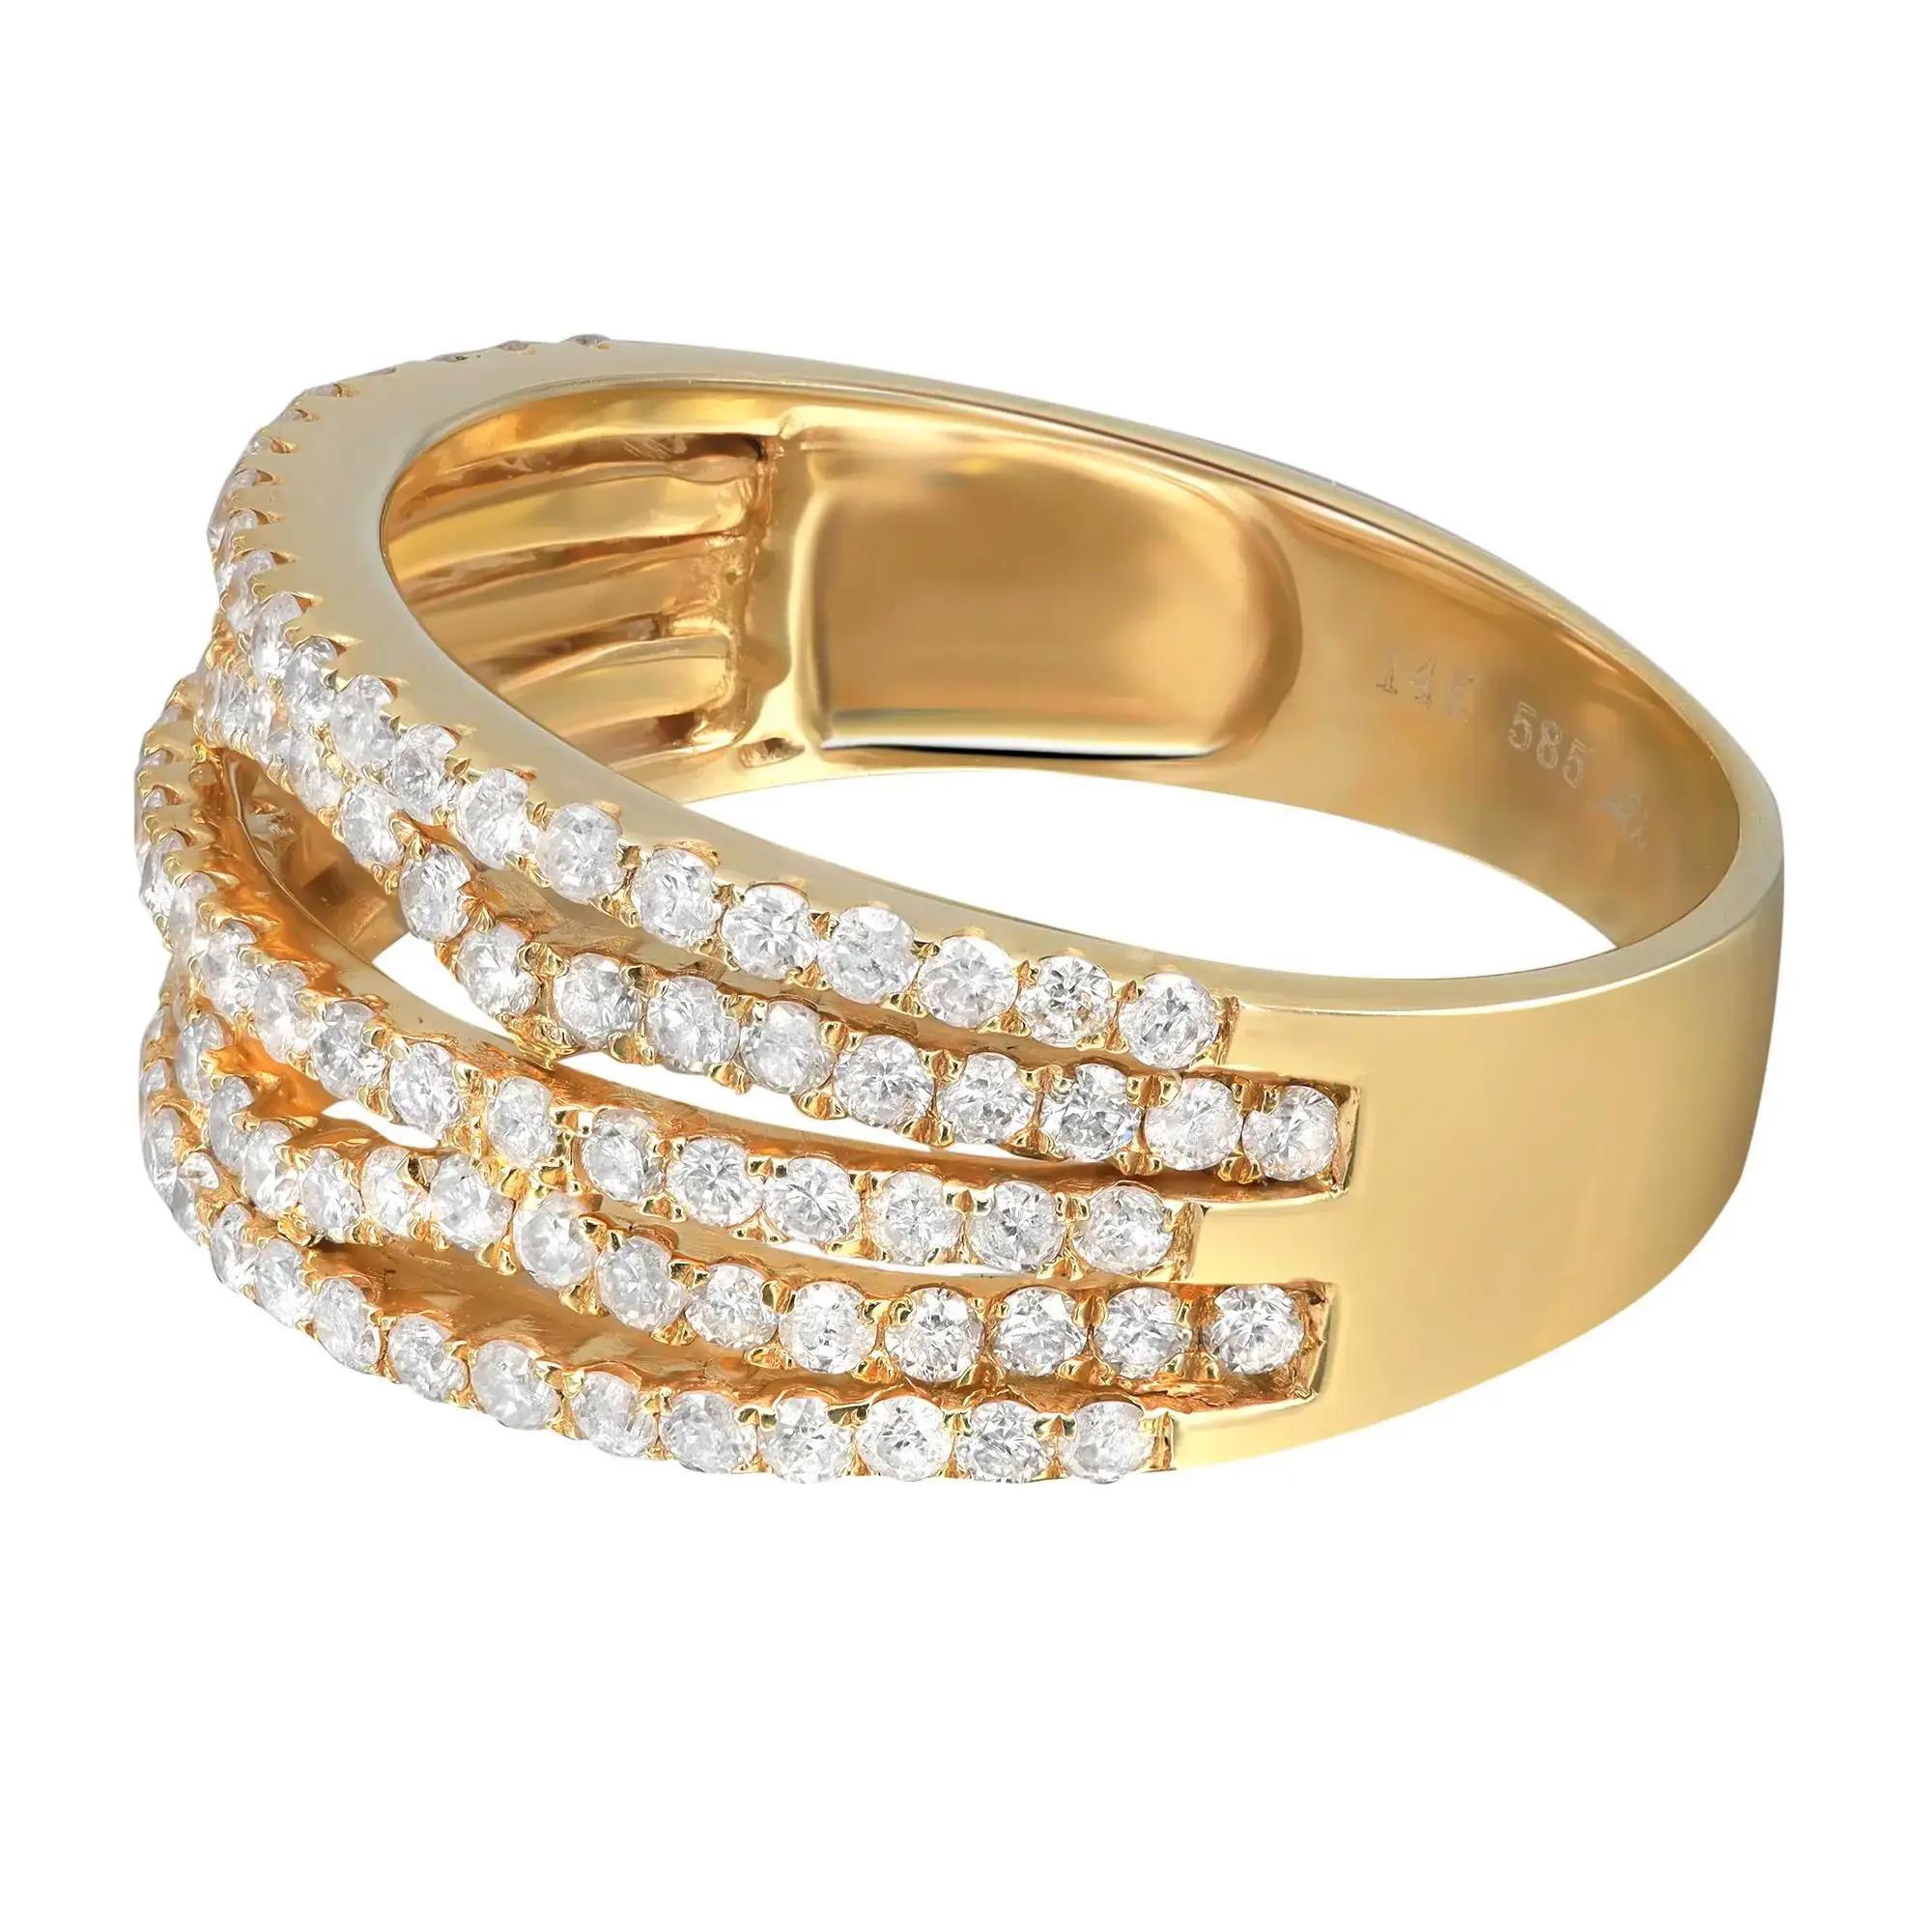 Dieser elegante und klassische Diamantring ist aus 14 Karat Gelbgold gefertigt. Mit mehreren Reihen von runden Diamanten im Brillantschliff mit einem Gewicht von 1,03 Karat in Zackenfassung. Ringbreite: 9.3 mm. Ringgröße: 7,5. Gesamtgewicht: 4,13